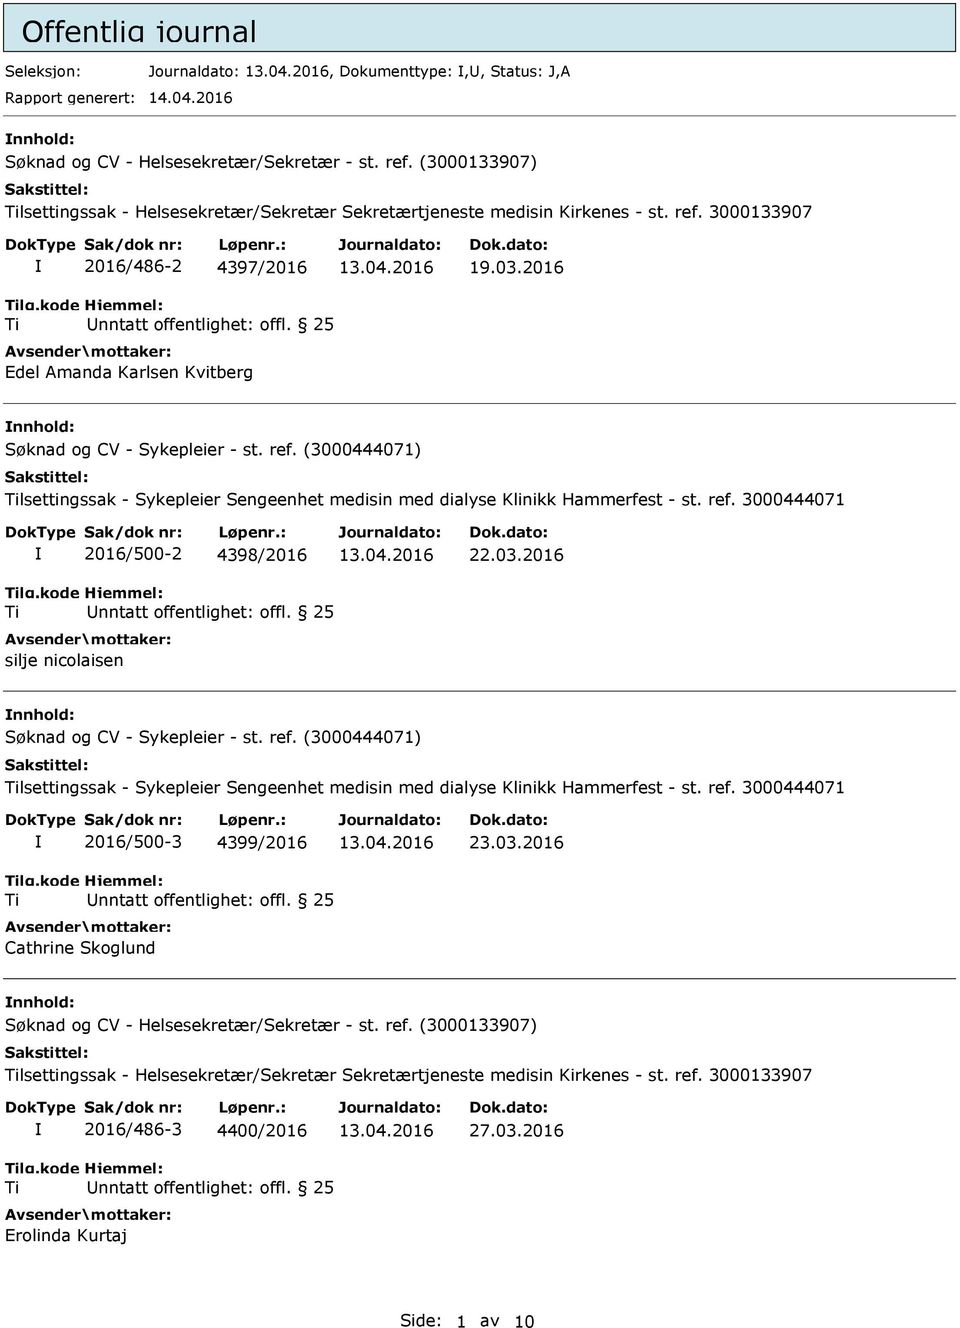 (3000444071) lsettingssak - Sykepleier Sengeenhet medisin med dialyse Klinikk Hammerfest - st. ref. 3000444071 2016/500-2 4398/2016 silje nicolaisen 22.03.2016 nnhold: Søknad og CV - Sykepleier - st.